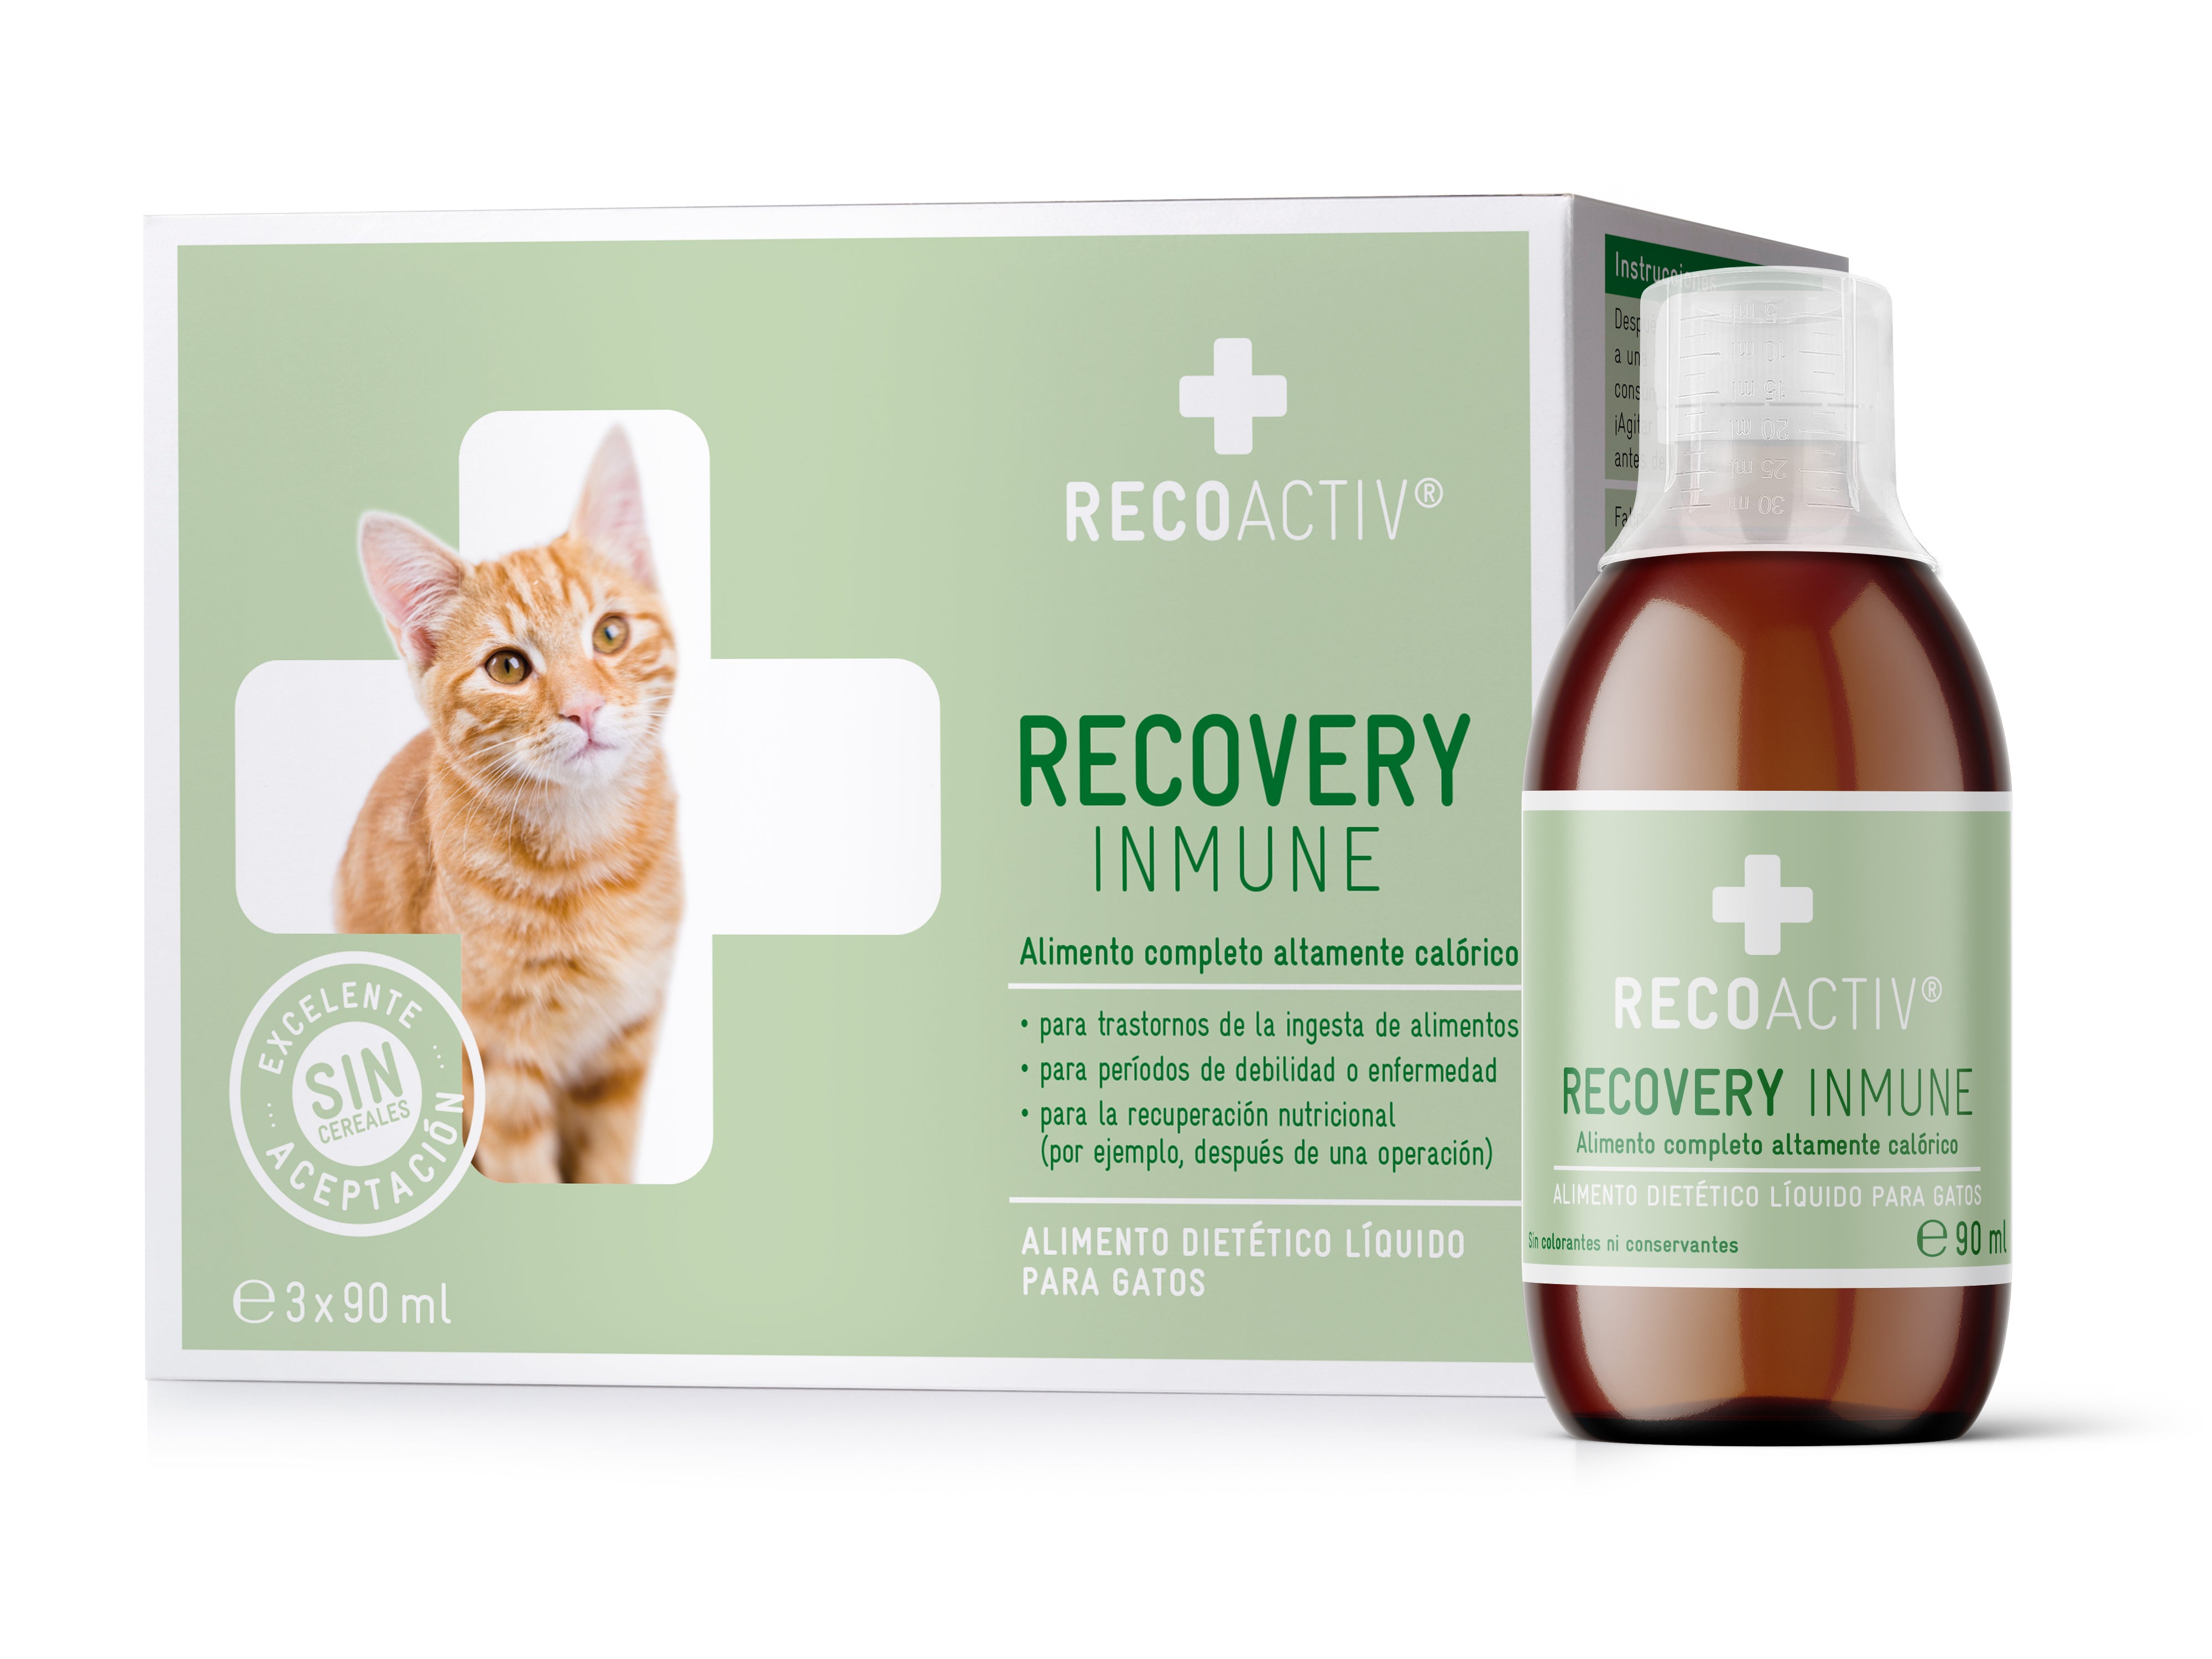 RECOACTIV® Recovery Renal Tónico par Gatos